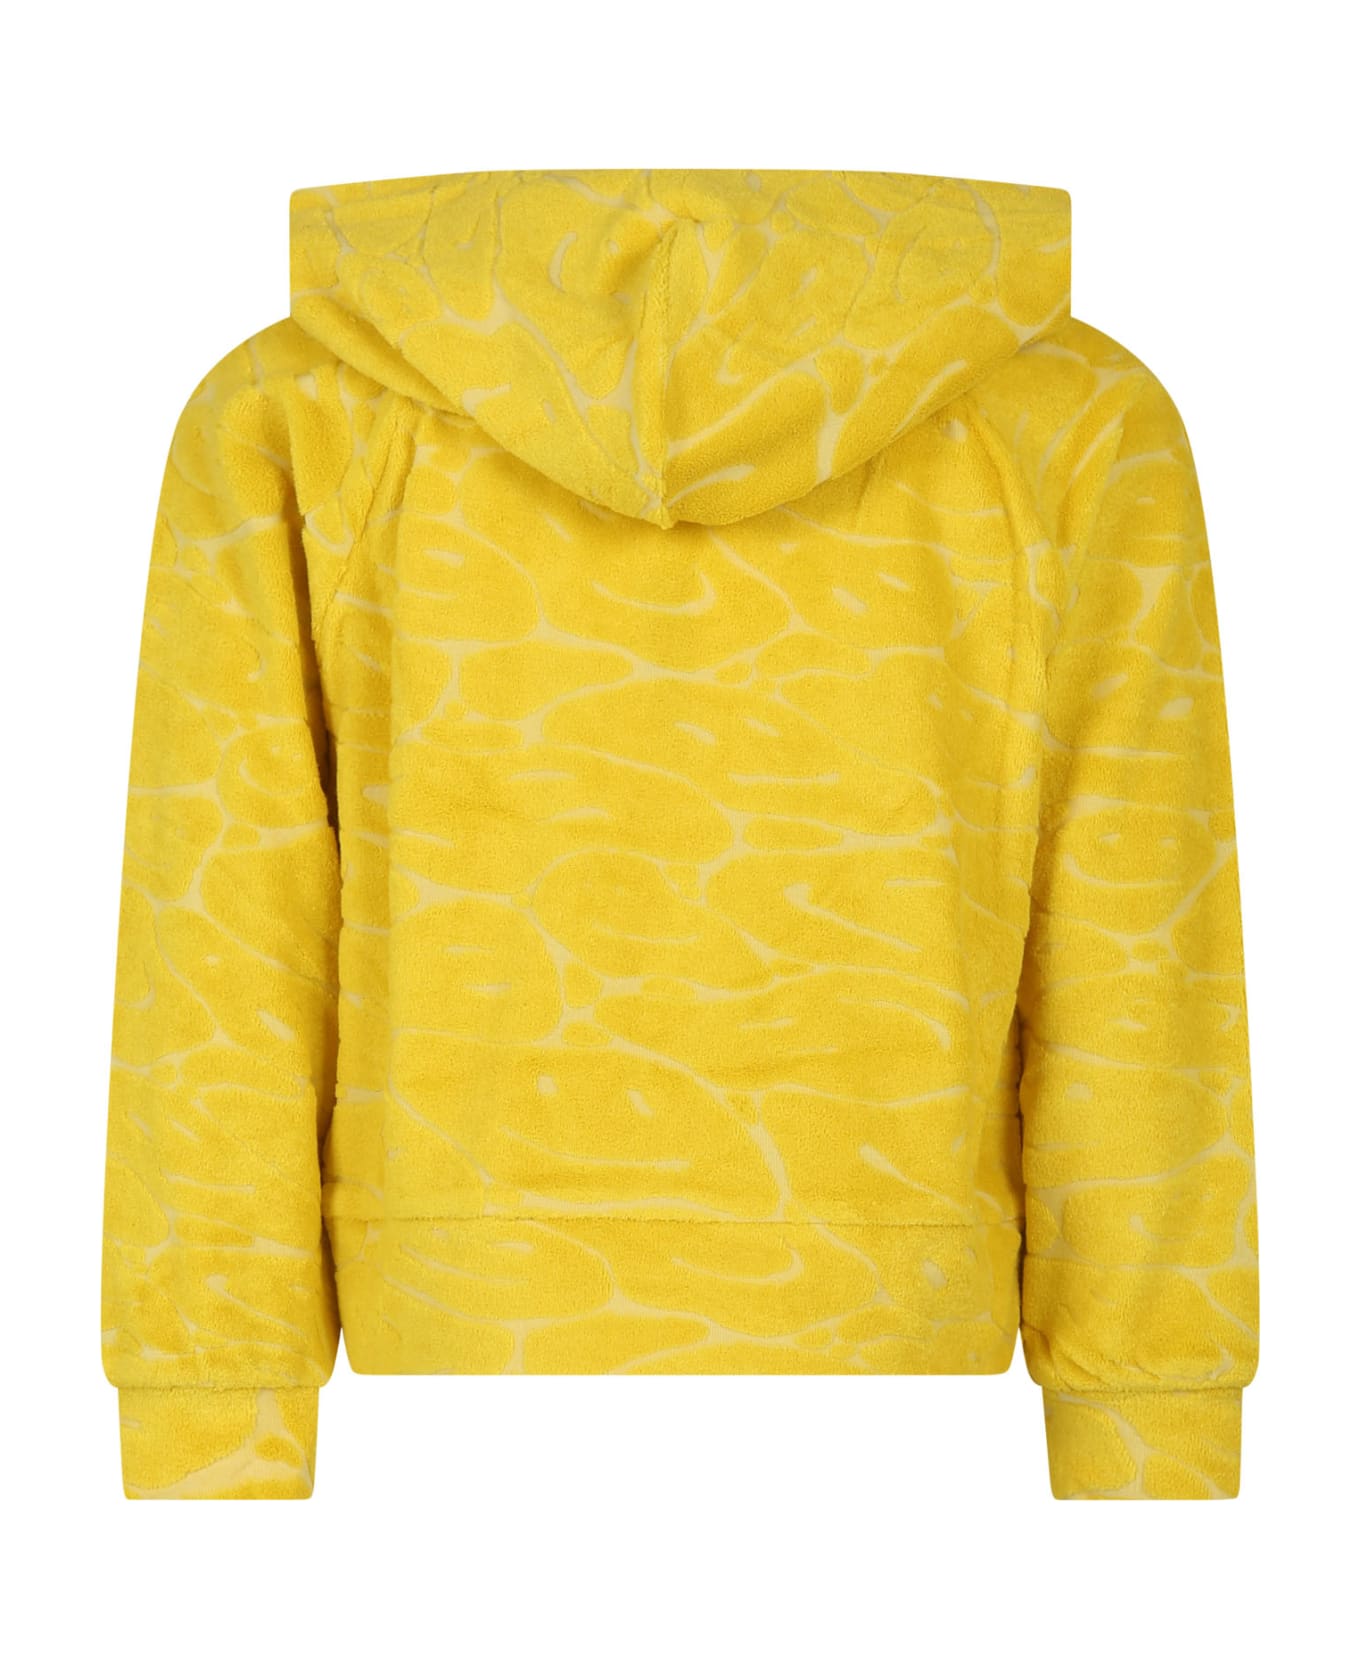 Molo Yellow Sweatshirt For Girl With Smiley - Yellow